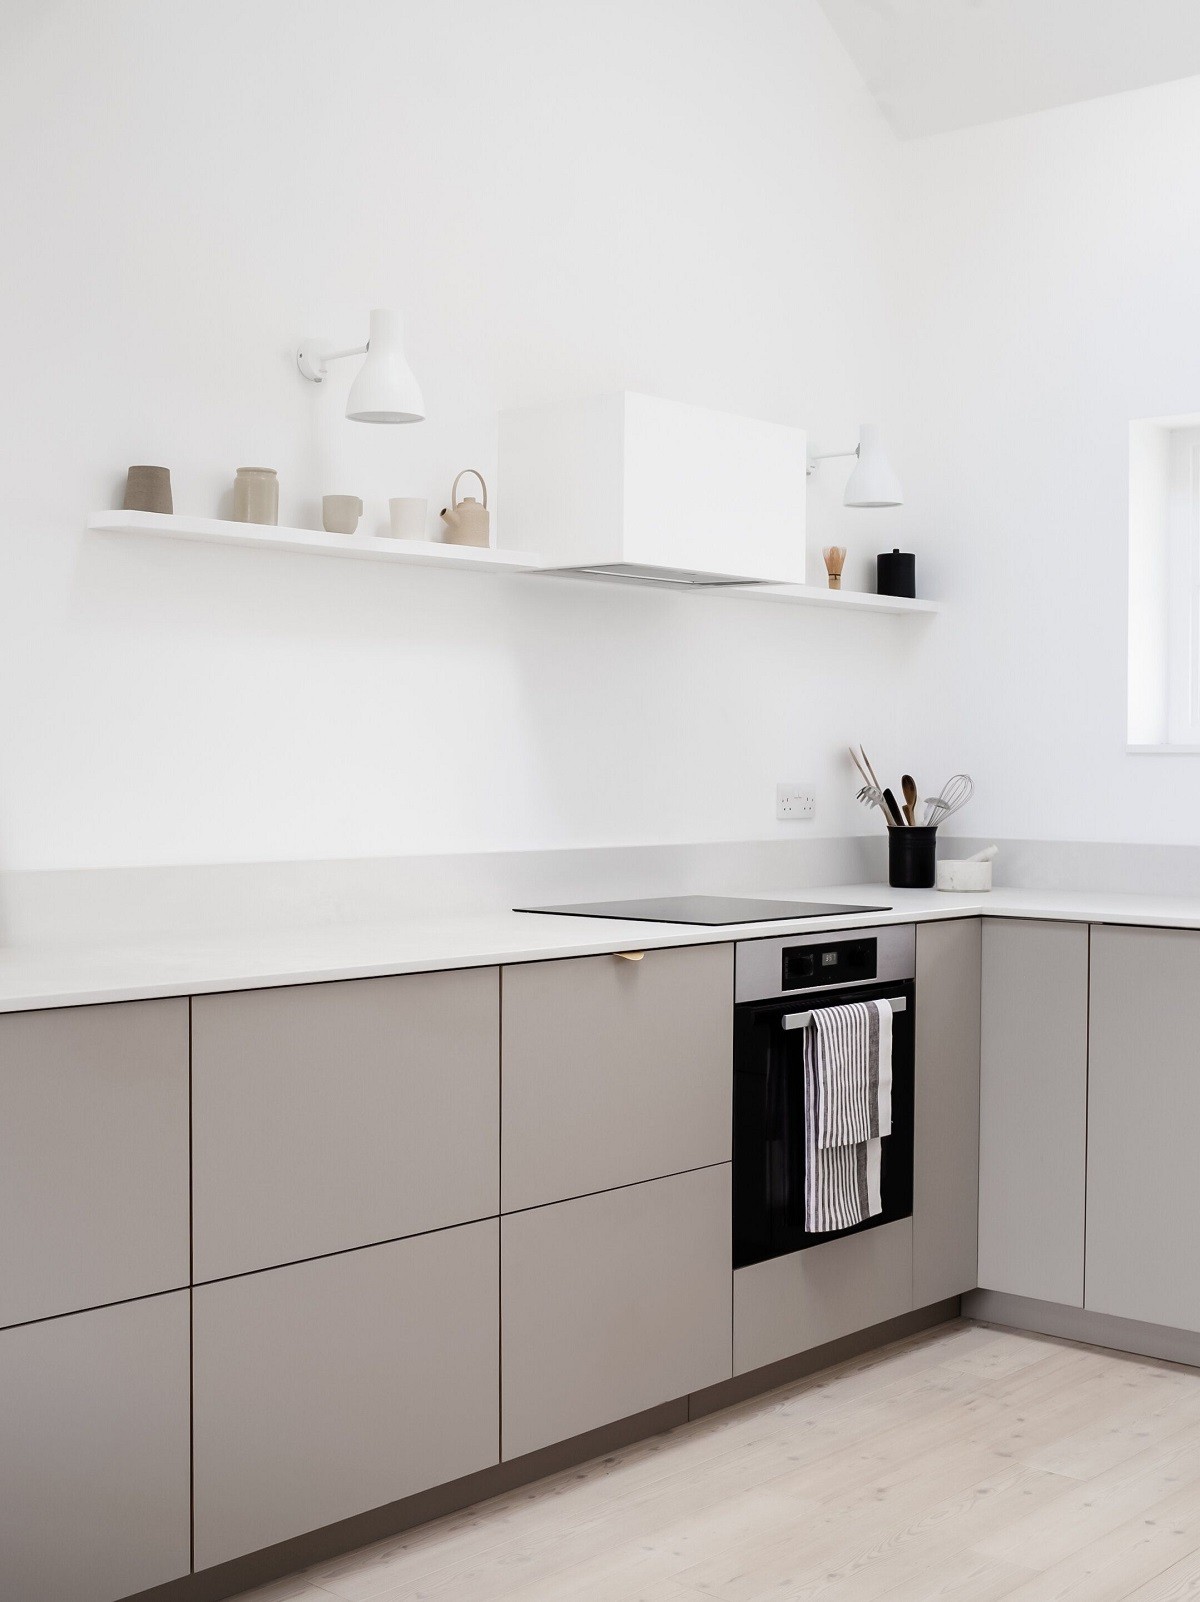 
Một căn bếp được trang trí bằng màu trắng và màu xám mang đến sự đơn giản nhưng vẫn giữ được nét thanh lịch
